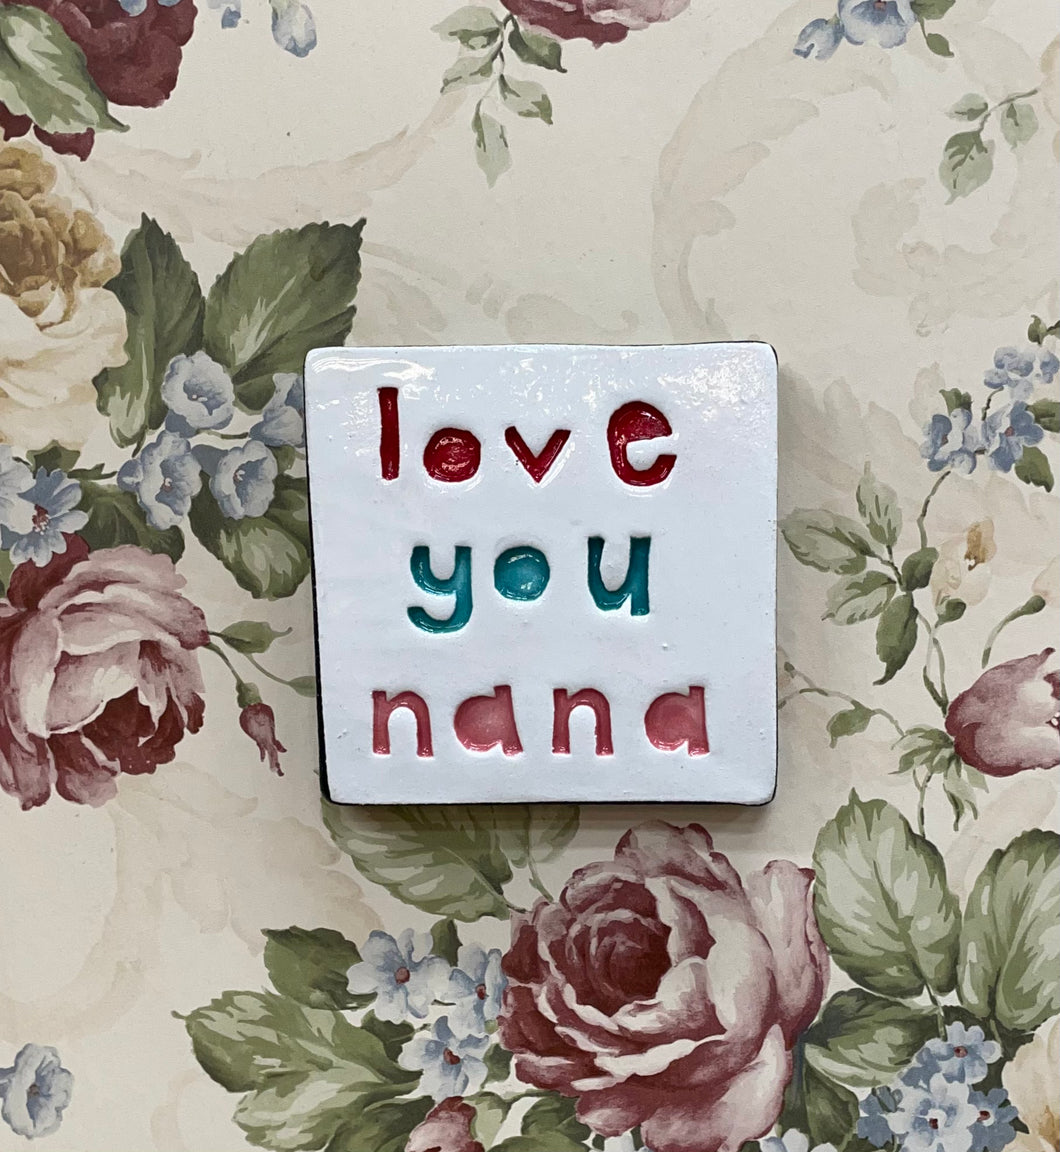 Love you nana tile